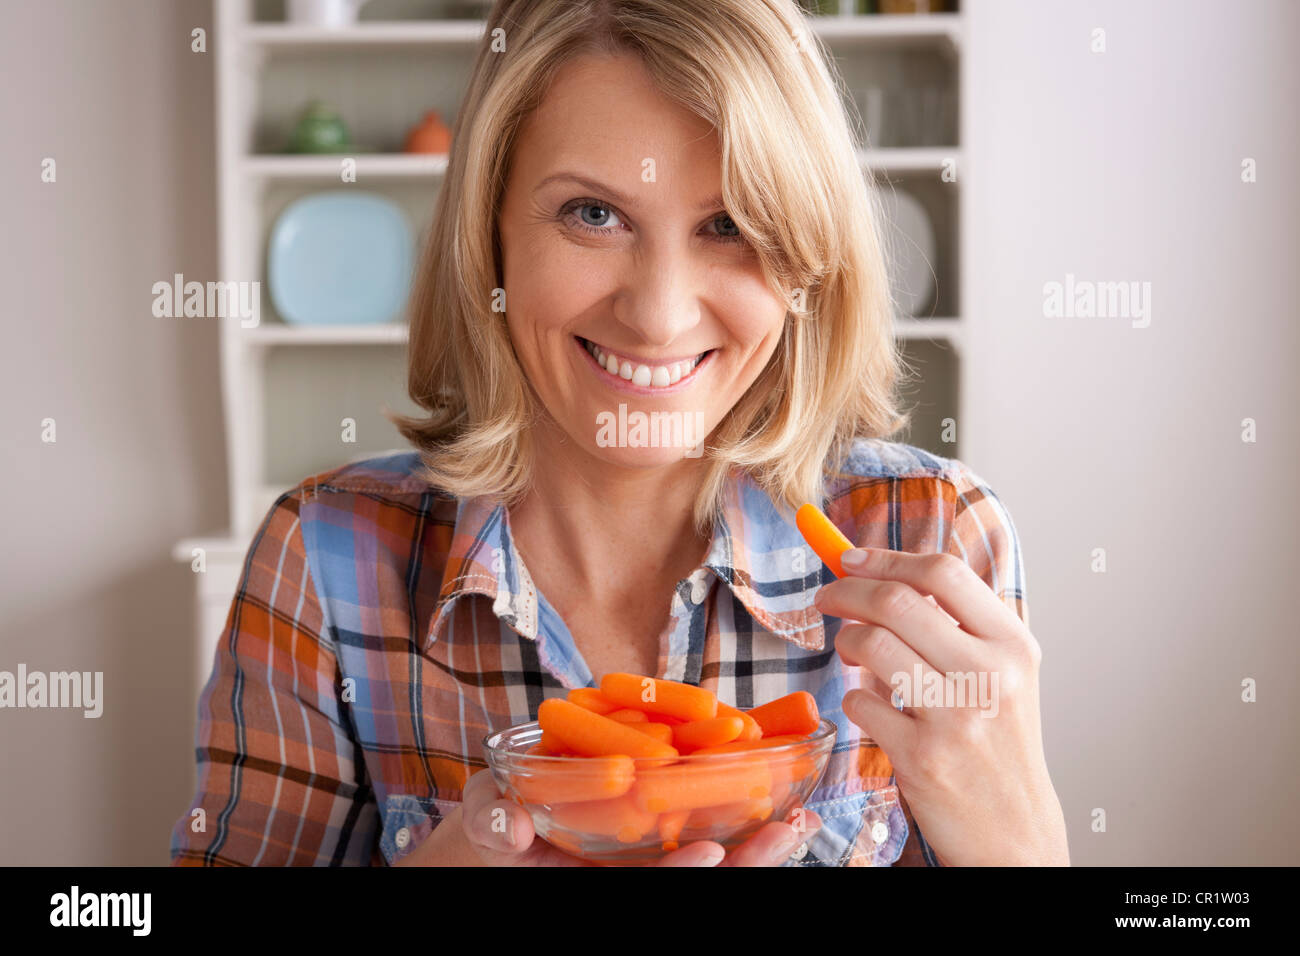 USA, Californie, Los Angeles, Portrait of mid adult woman avec bol de carottes Banque D'Images